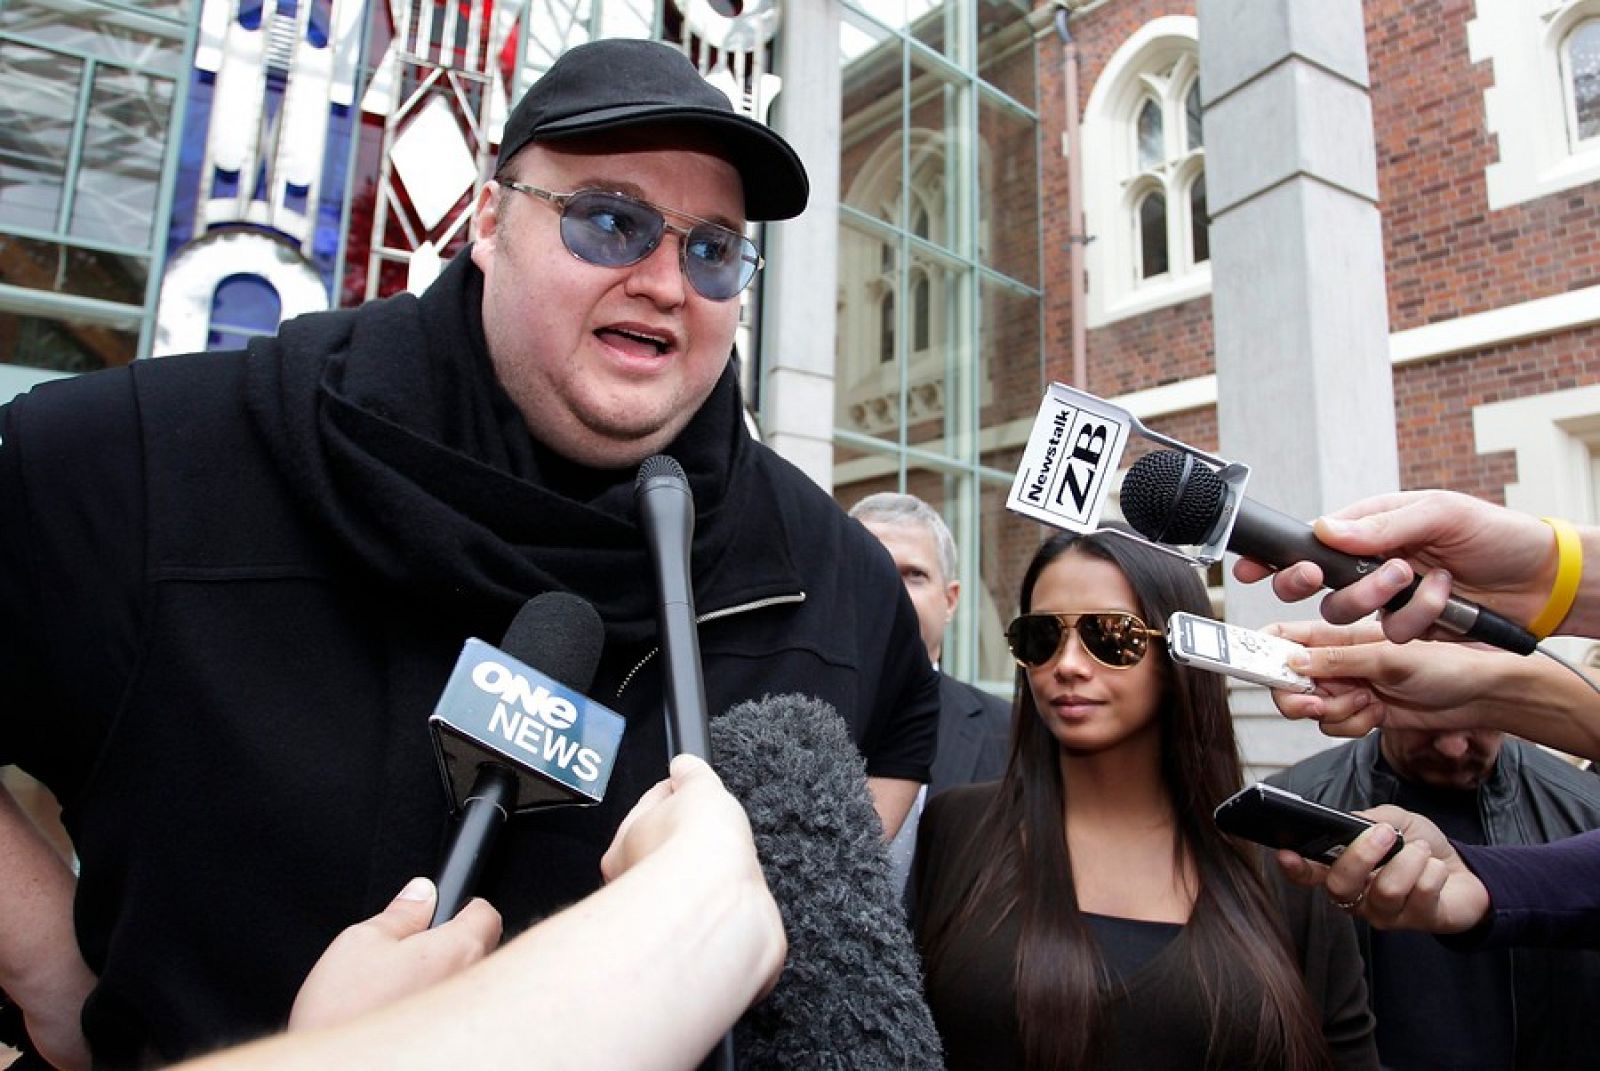 Kim 'Dotcom' atiende a los medios tras su salida del Tribunal junto a su esposa Mona